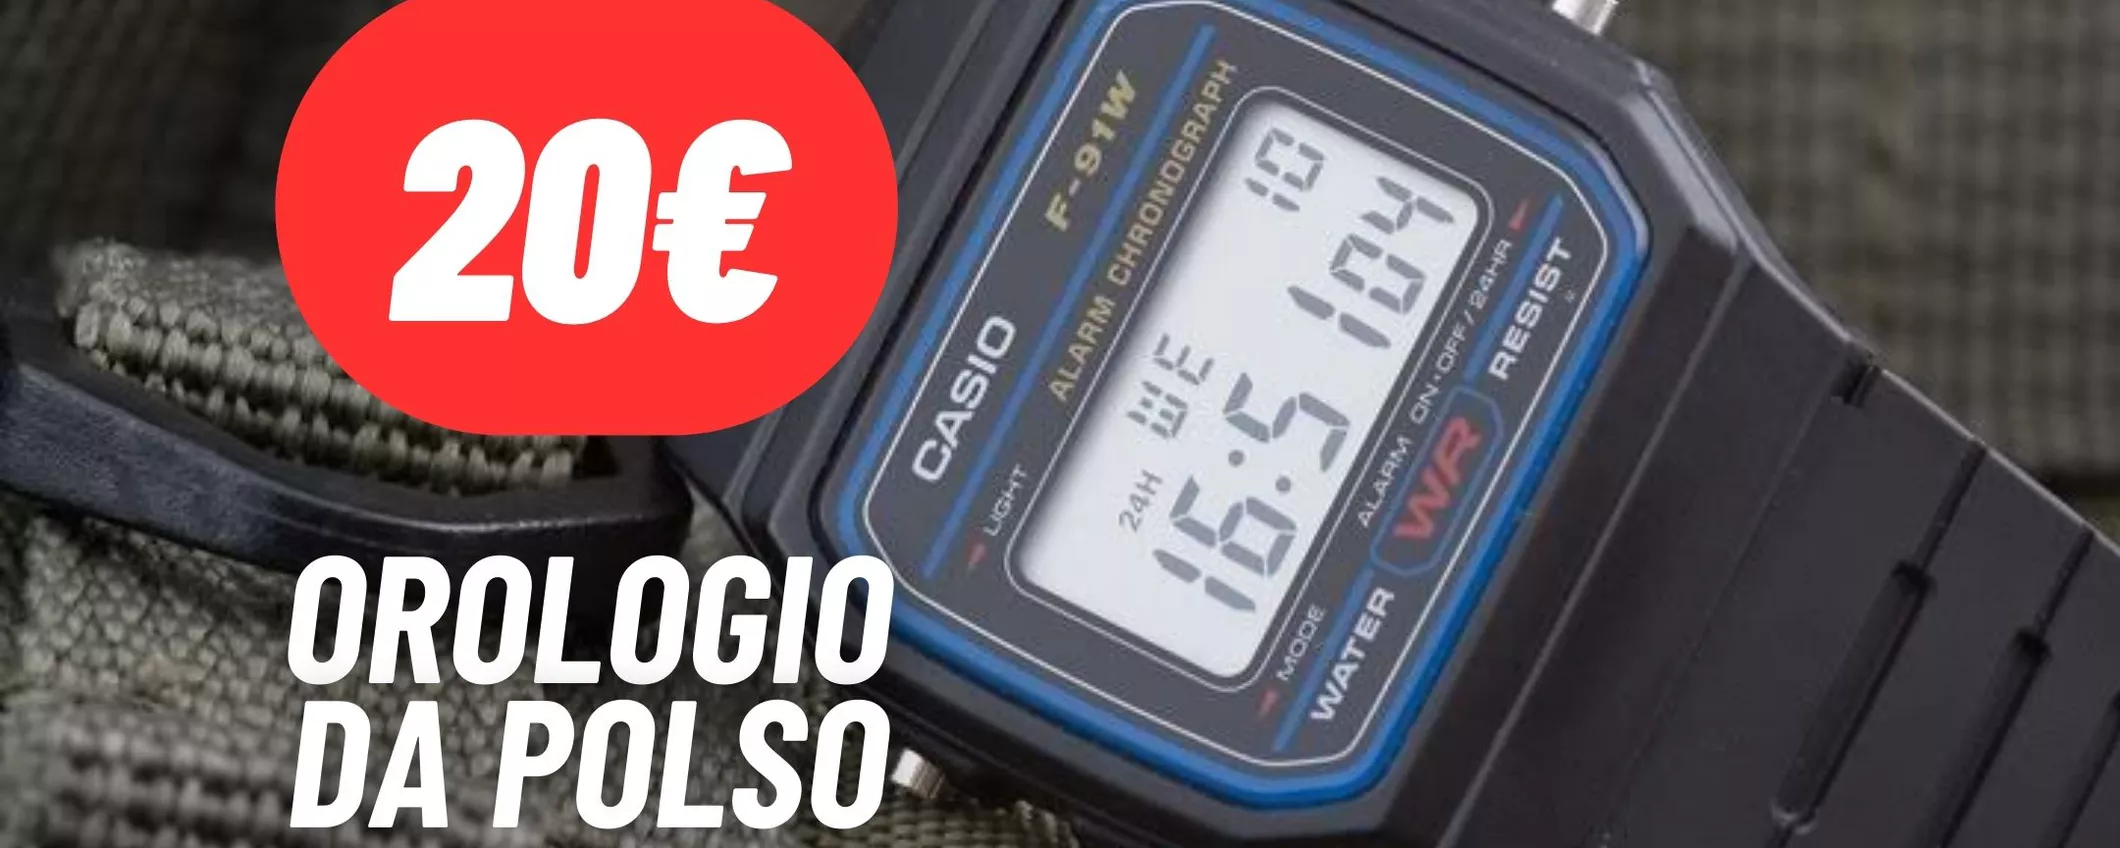 Casio: orologio sportivo ed elegante A SOLI 20€ su eBay